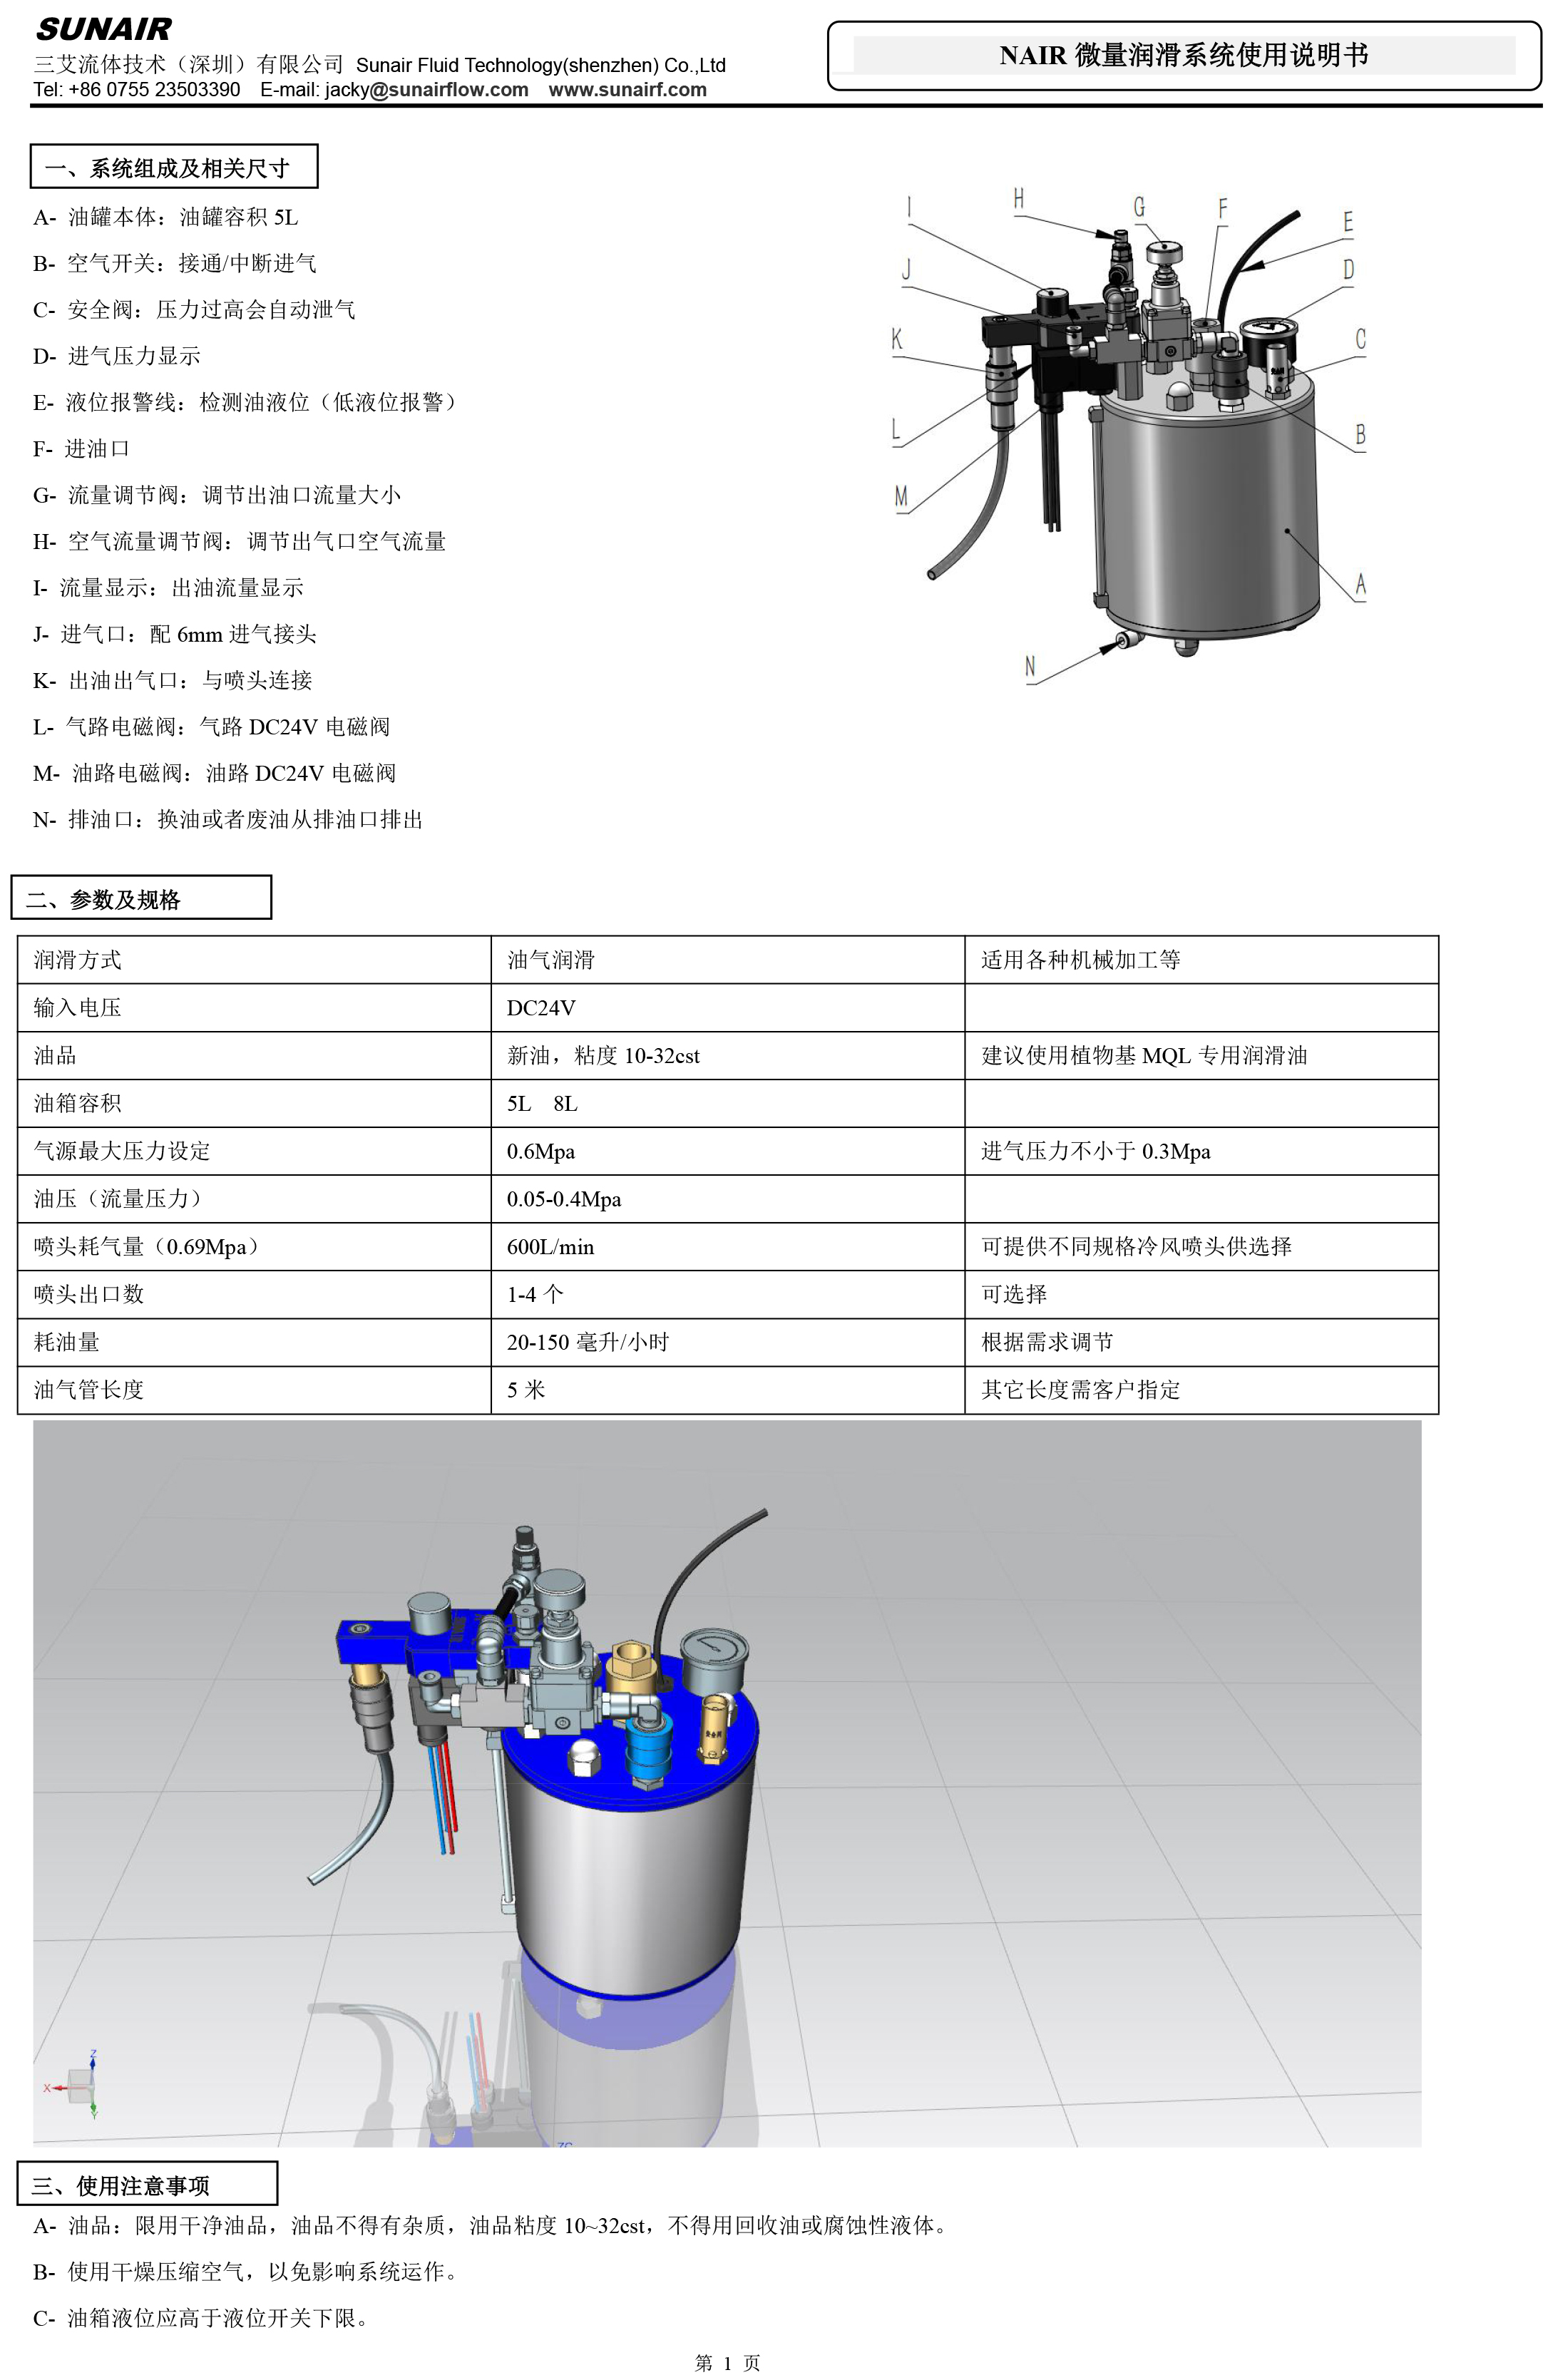 NAIR-5L新系统 微量润滑系统说明书-SUNAIR-1.jpg